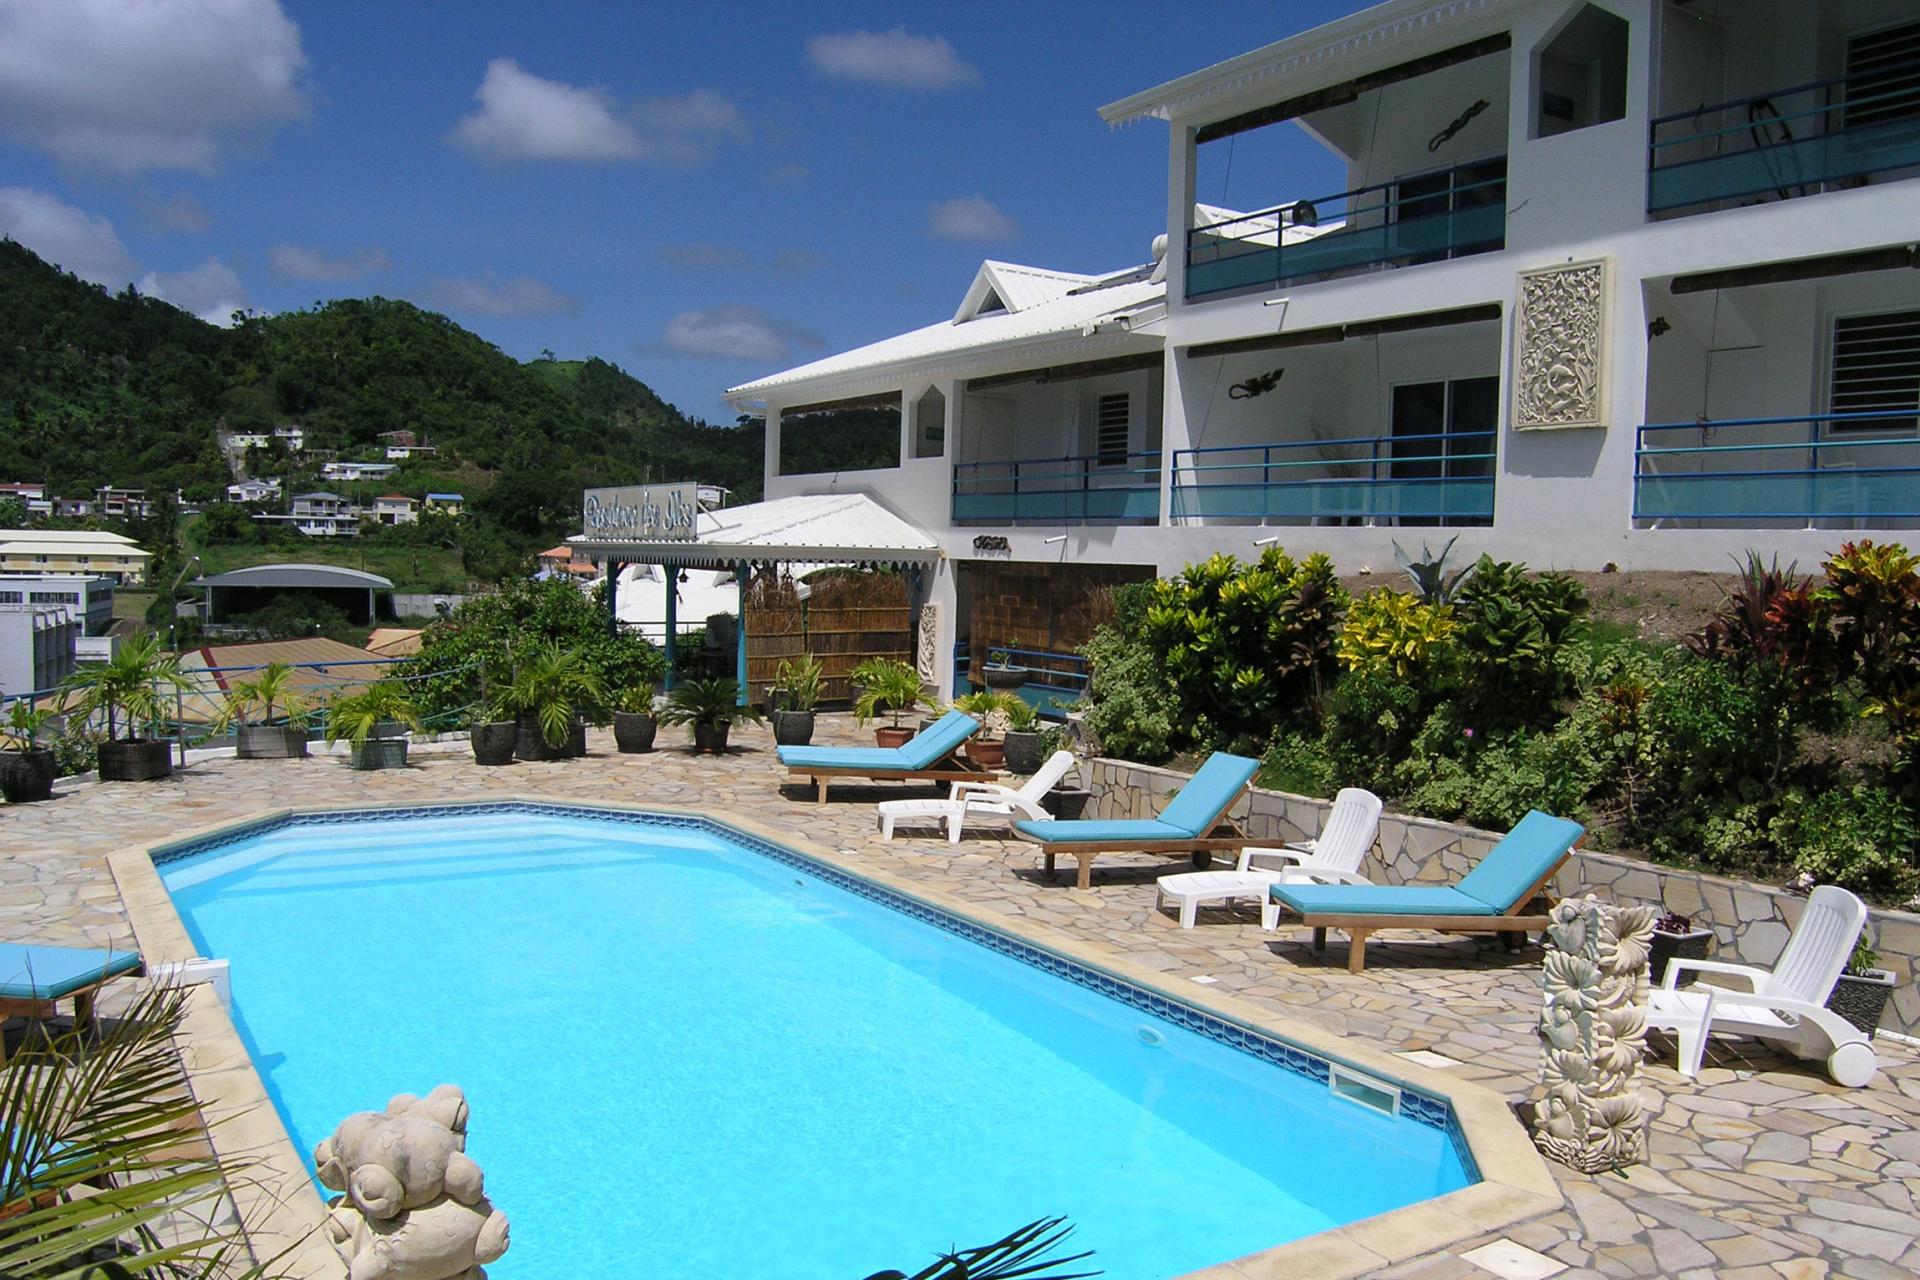 Résidence des iles - Martinique - La piscine